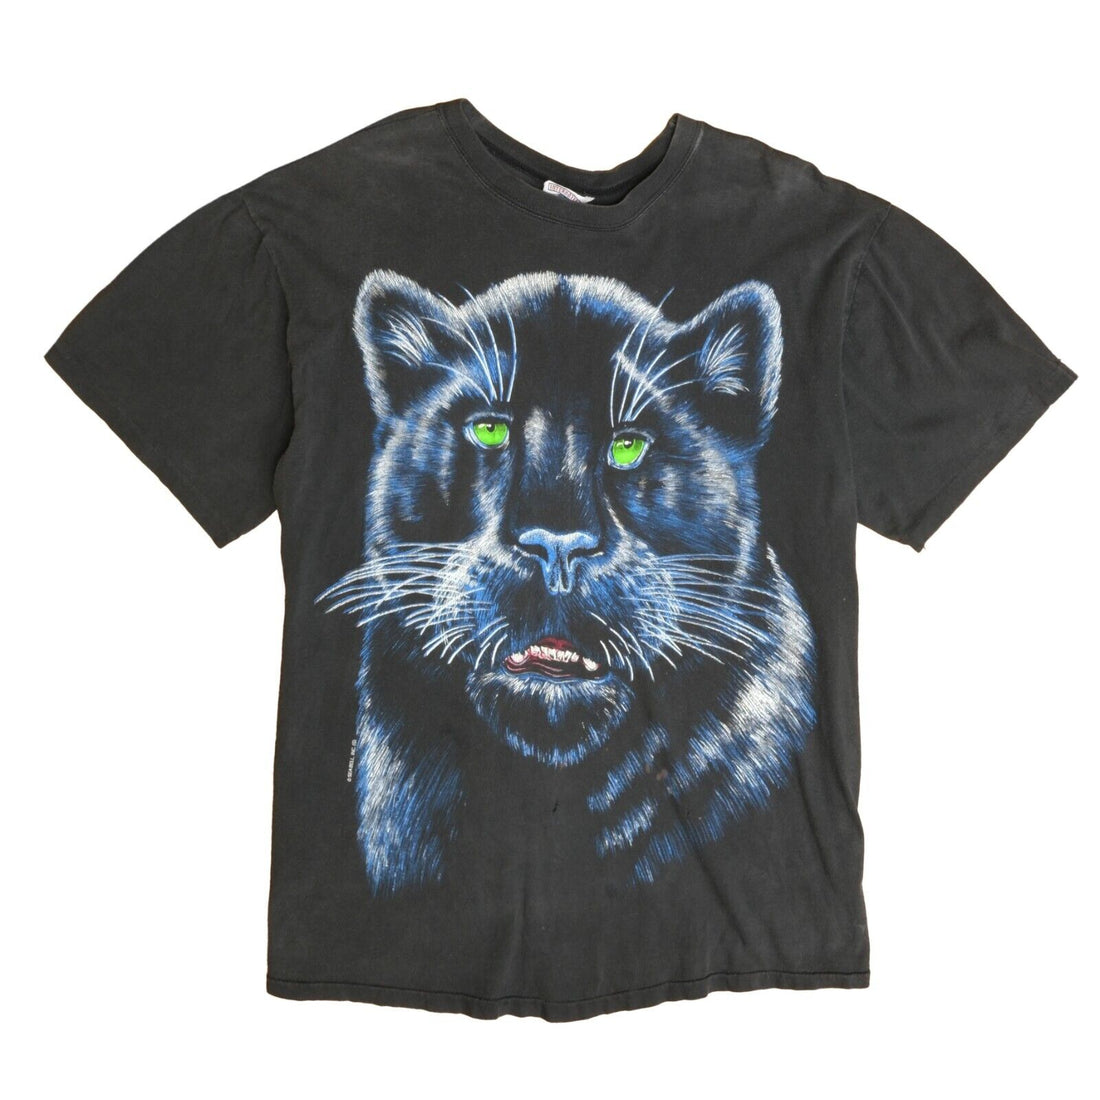 Vintage Black Panther T-Shirt Size XL Animal Nature Wildlife 90s